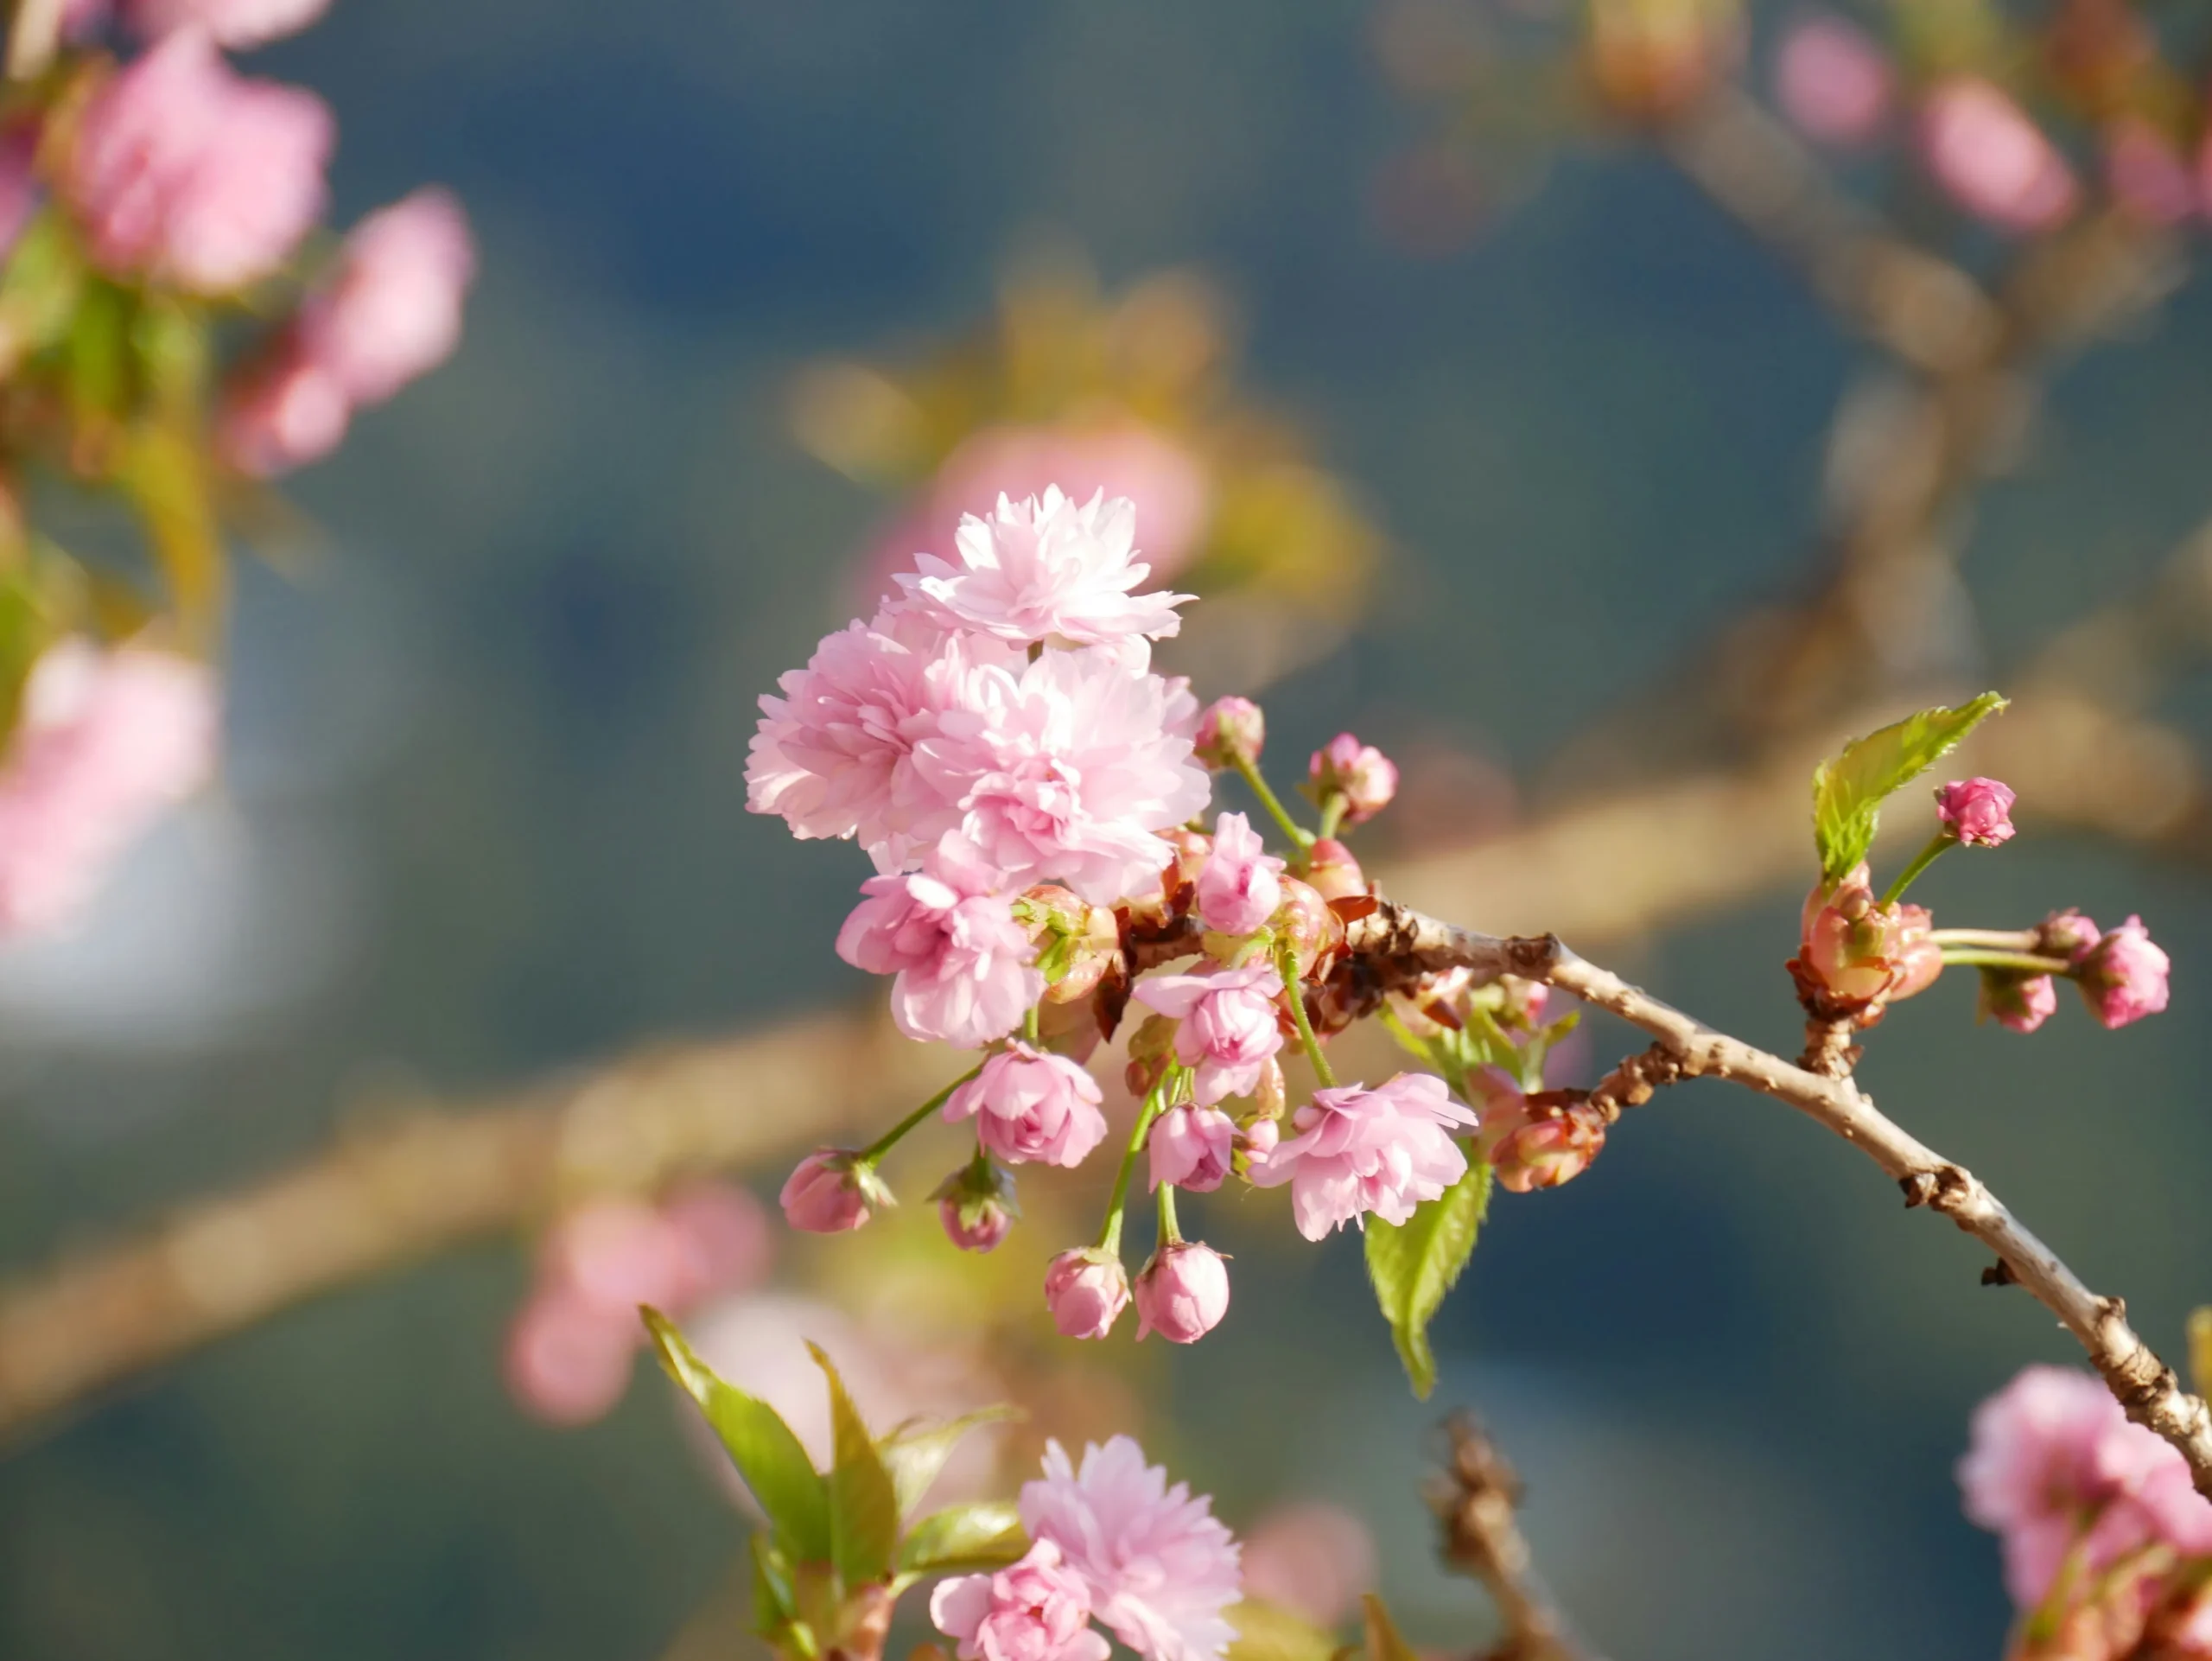 マキノ高原には八重桜、大島桜、ソメイヨシノらが約1,000本植えられています。八重桜は今週末〜来週が見頃です。花がこんもりとして、満開の木の下を歩くと包みこまれそうです。